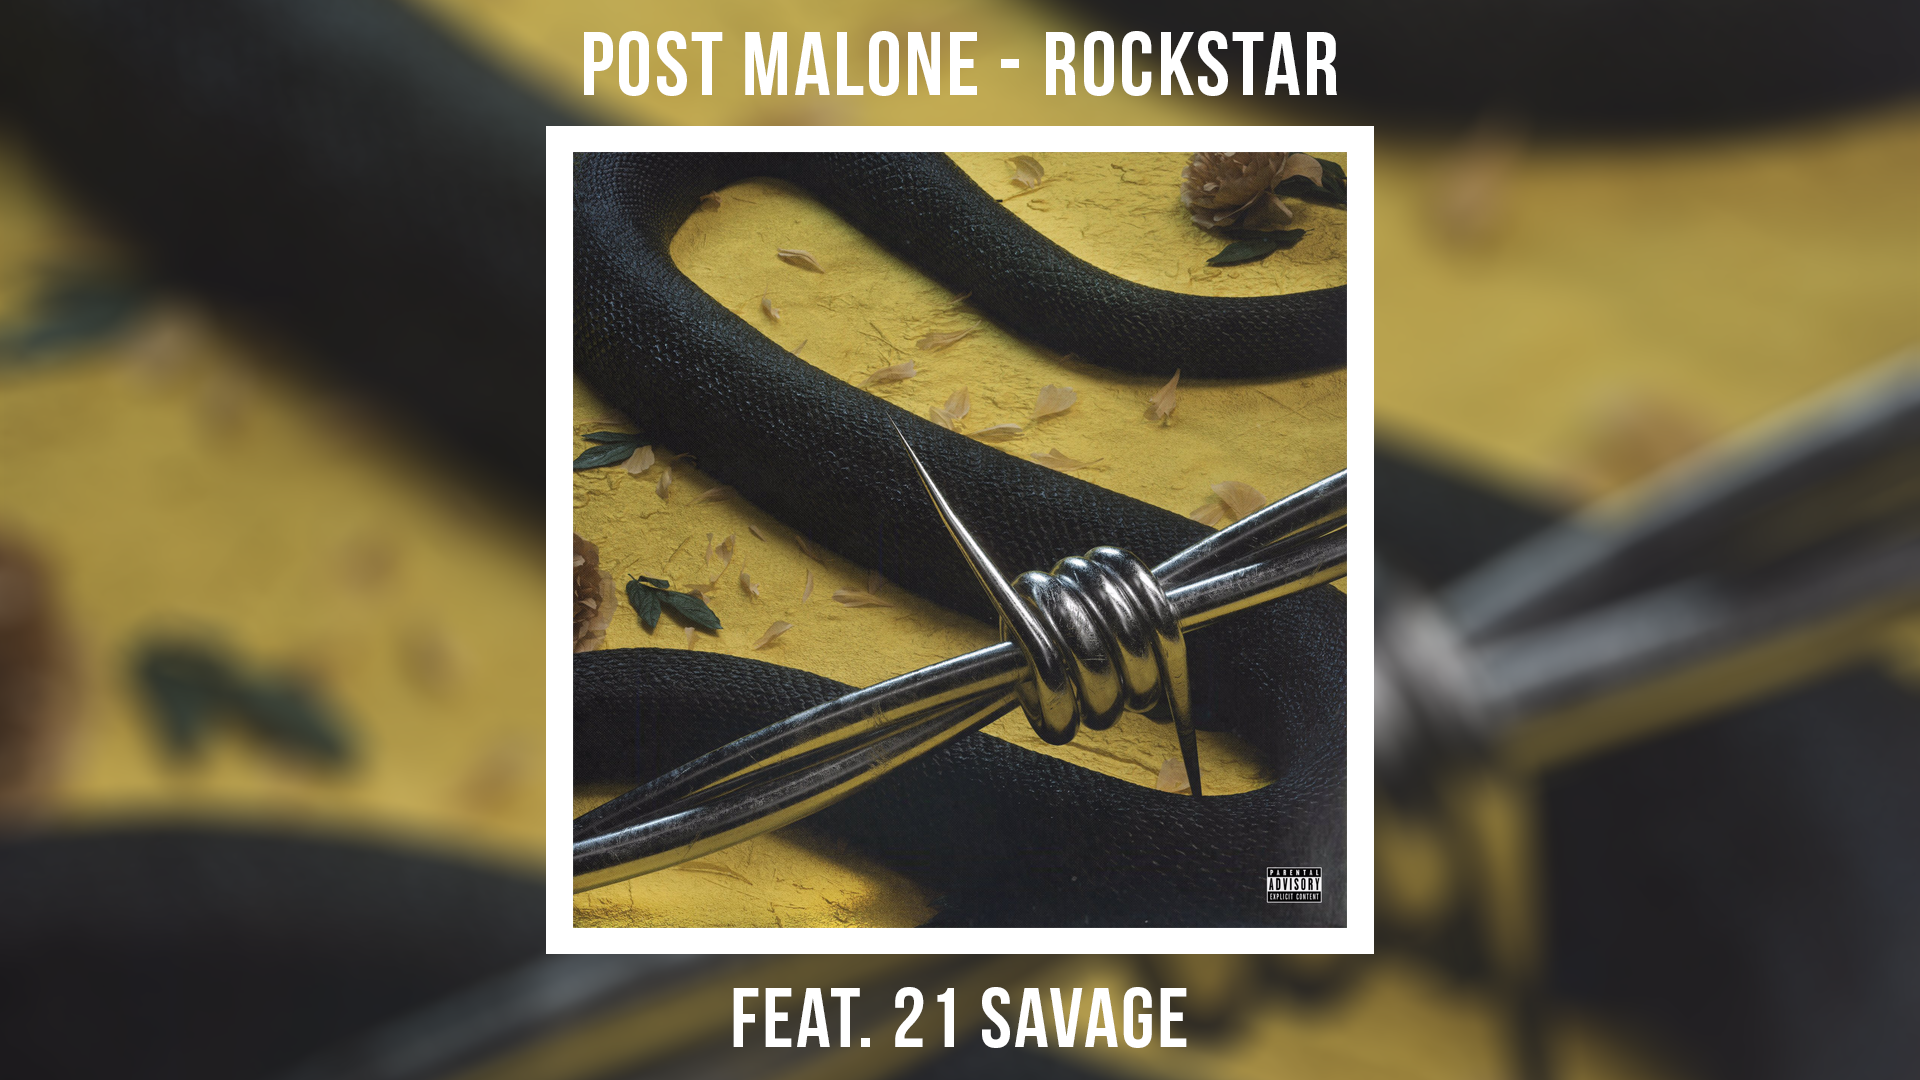 Английская песня рокстар. Rockstar 21 Savage, Post Malone. Post Malone Rockstar обложка. Rockstar Post Malone 21 Savage обложка. Post Malone Rockstar ft. 21 Savage обложка.